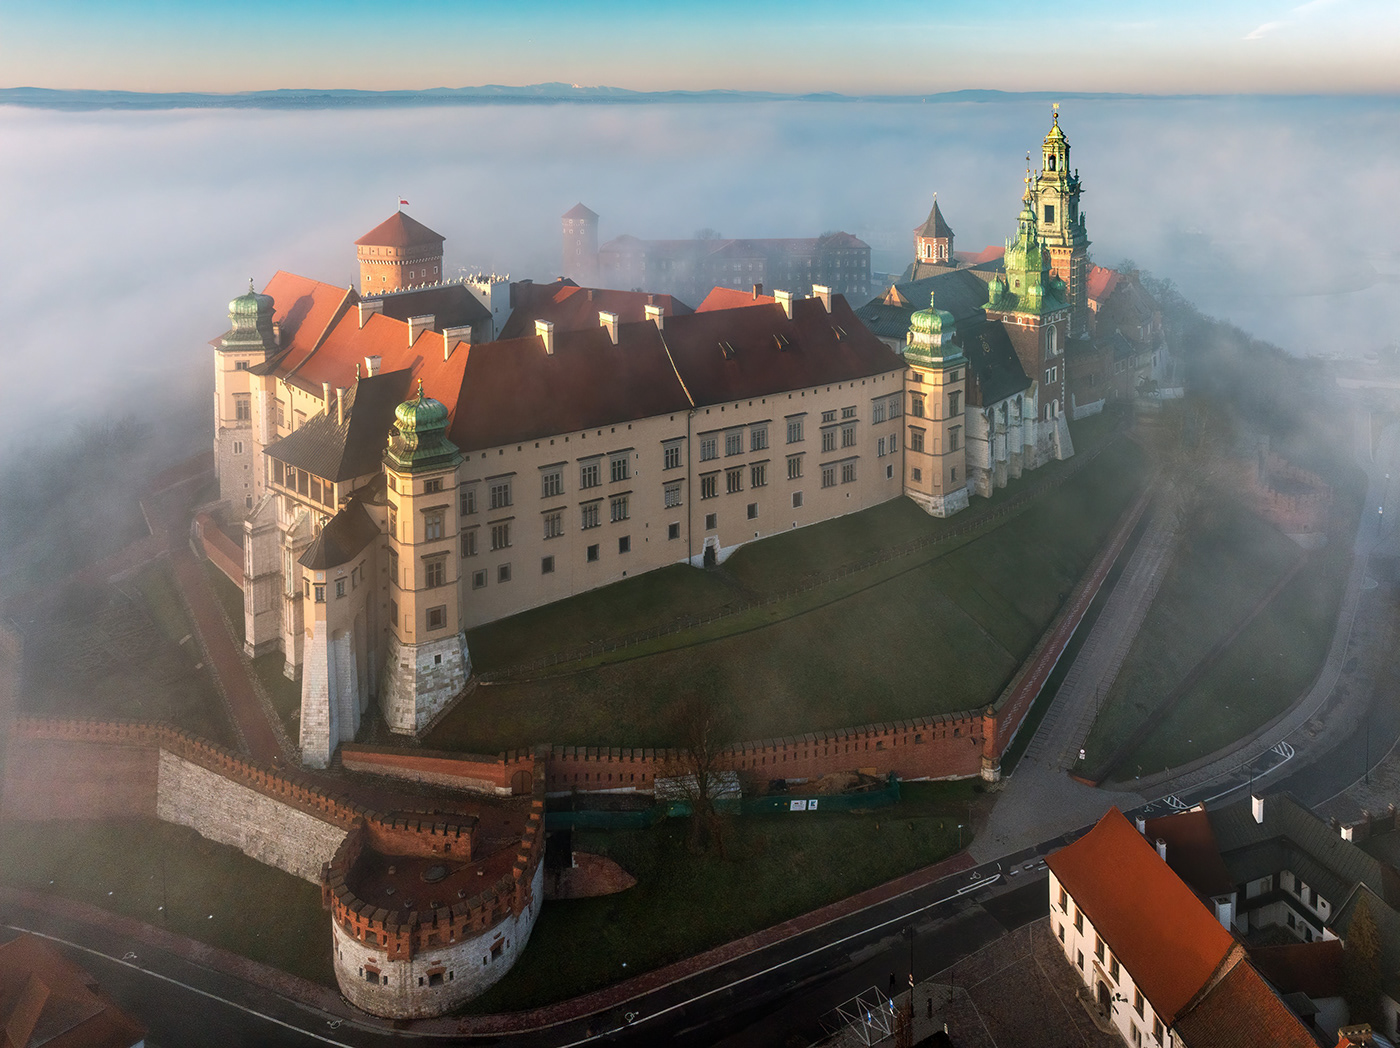 krakow Wawel Castle polska fog mist spring wiosna mgła